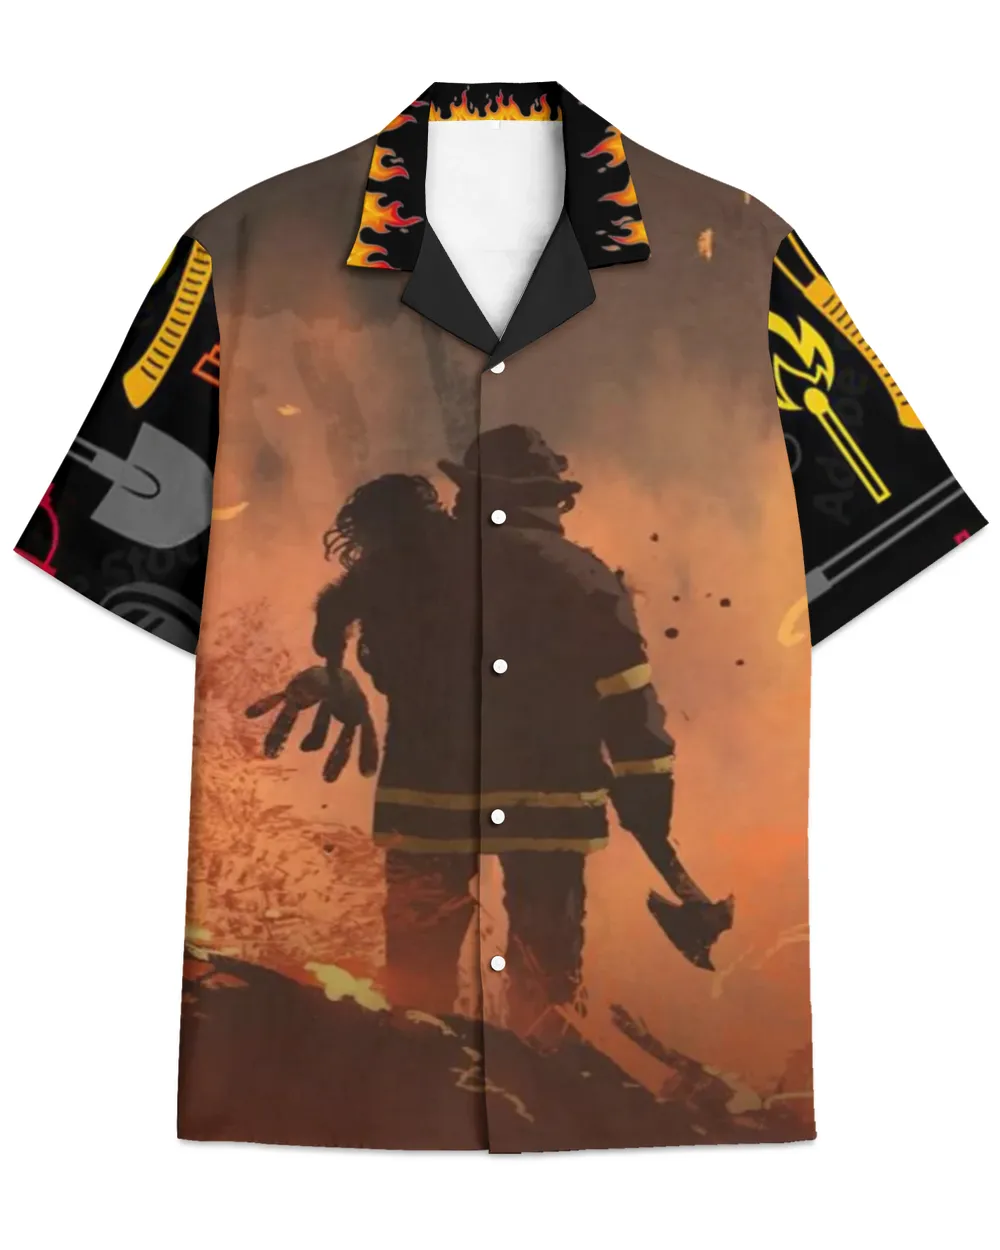 Firefighter-Hawaiian Shirt new